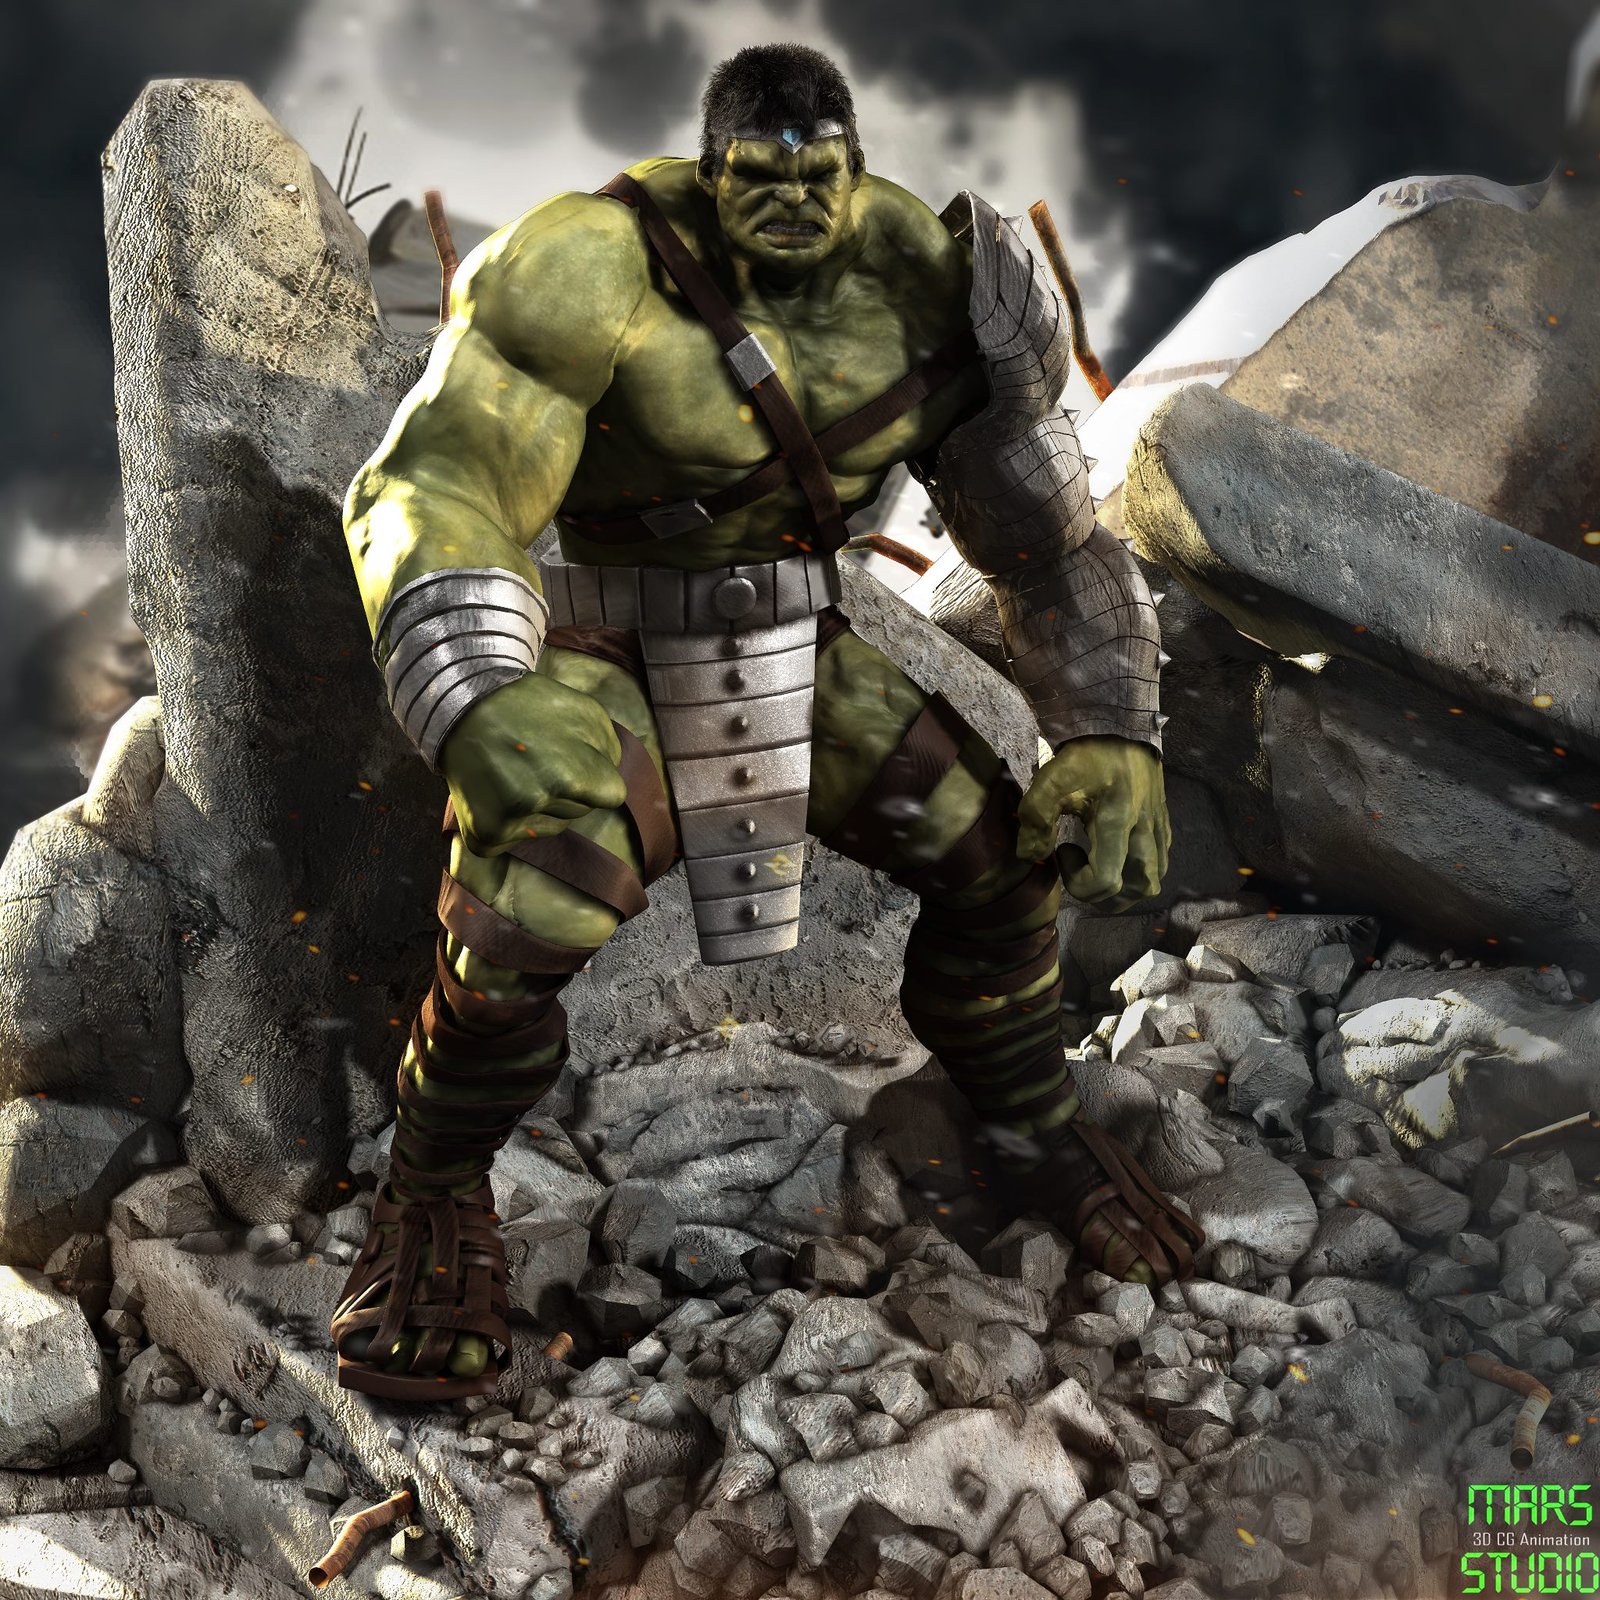 World War Hulk!!!!